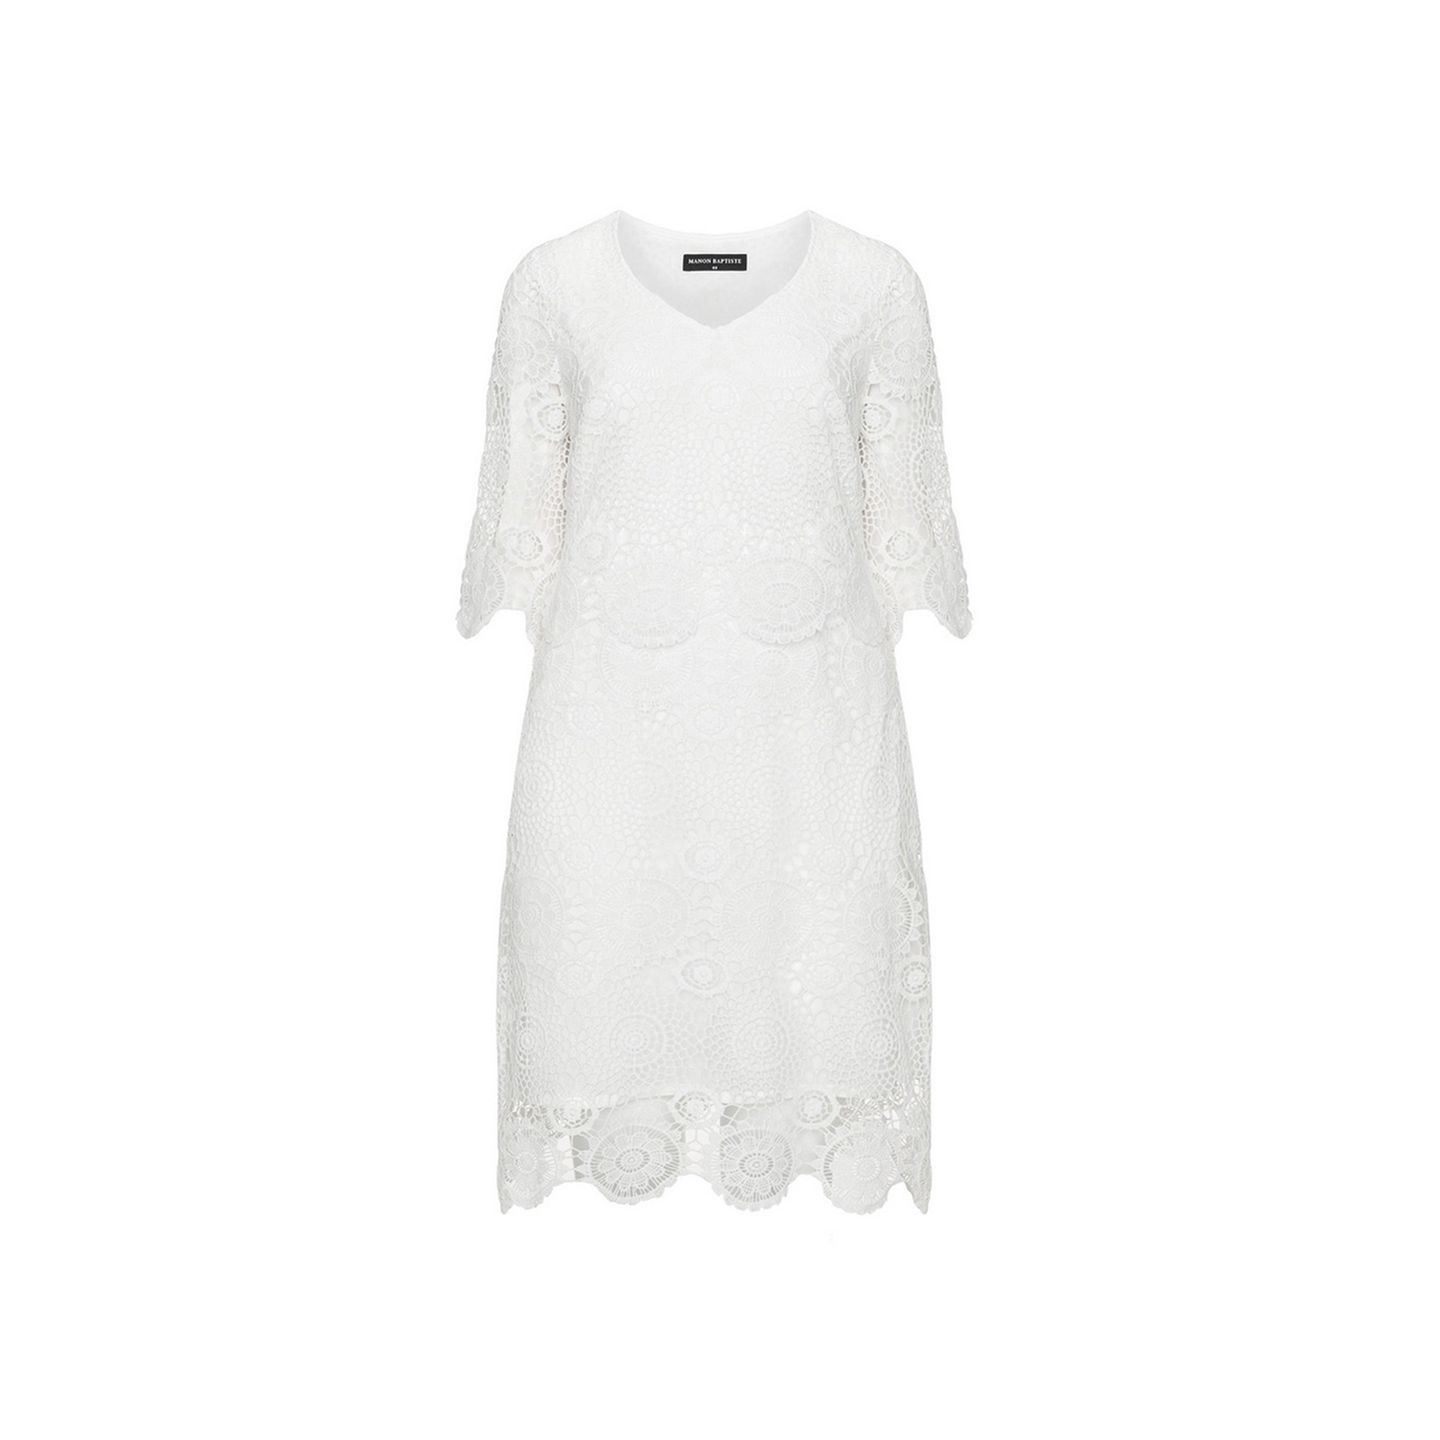 Knielanges weißes Kleid mit viiiel Spitze. Erhältlich über Navabi bis Größe 54 für circa 74 Euro.